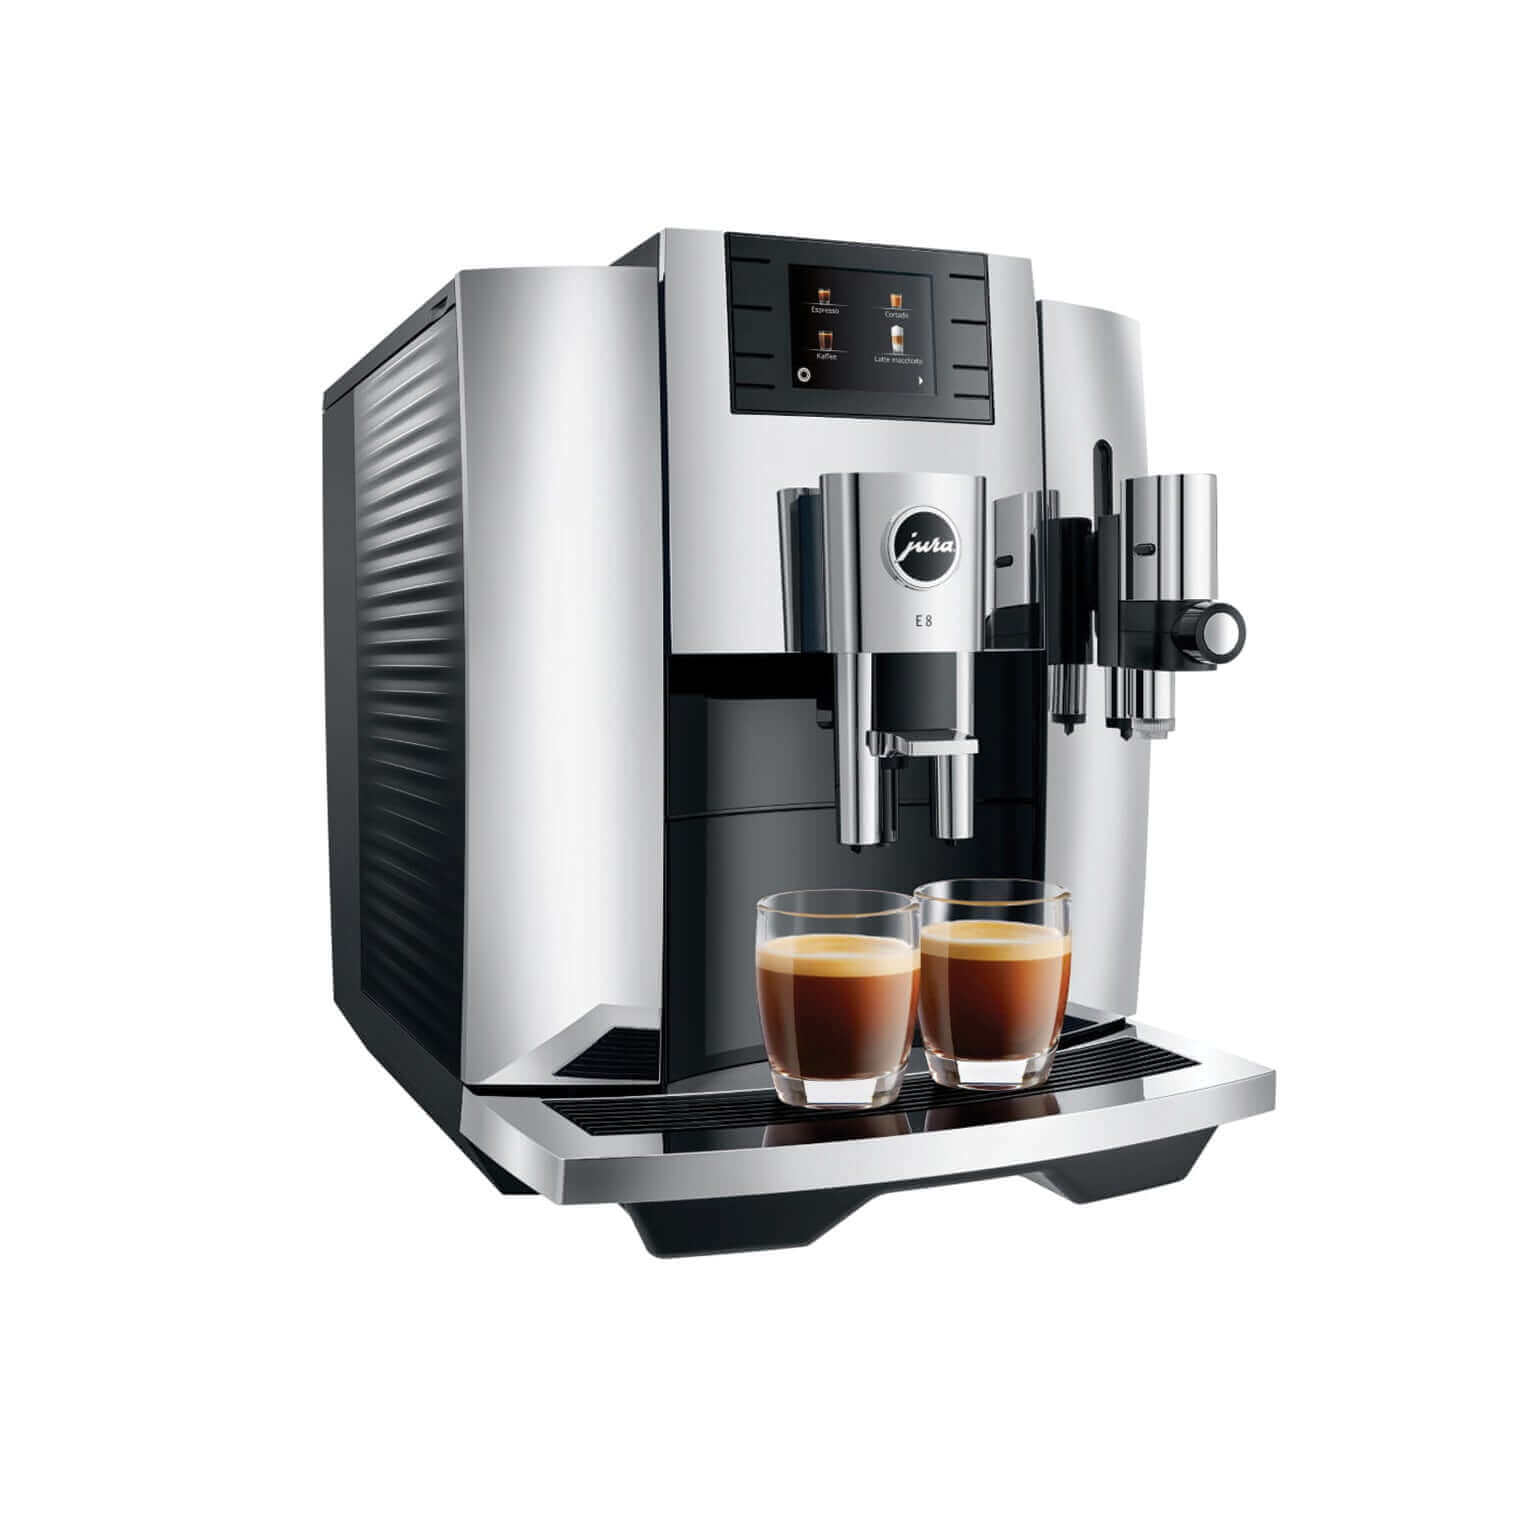 Machine à Espresso Jura - E8